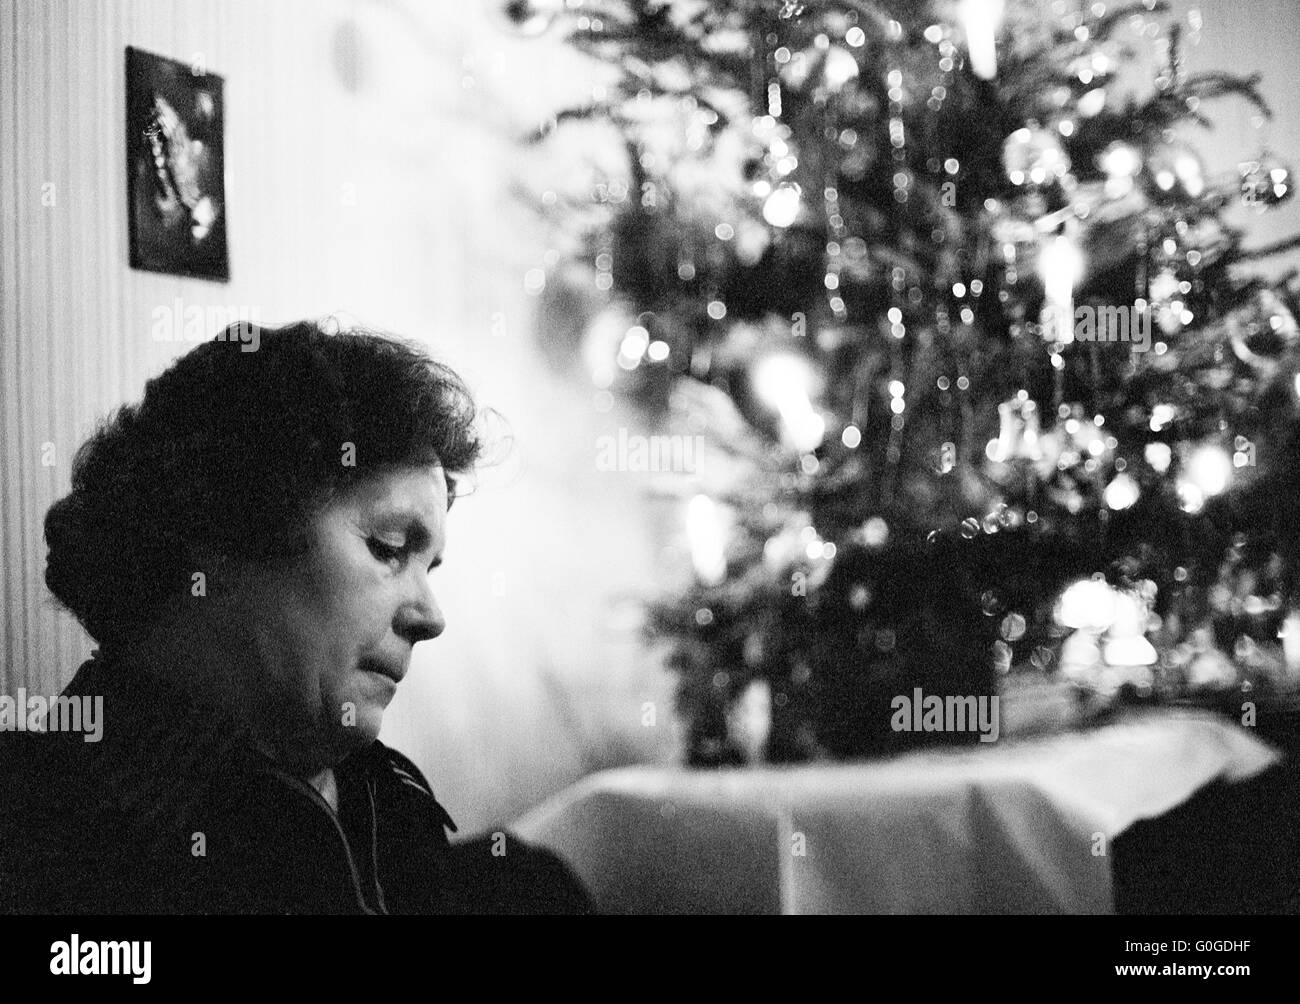 70er Jahre, schwarz / weiß Foto, Menschen, Frau 50 bis 65 Jahre einsam sitzen im Wohnzimmer, hinter der Weihnachtsdekoration, Einsamkeit, traurig, depressiv, nachdenklich Stockfoto